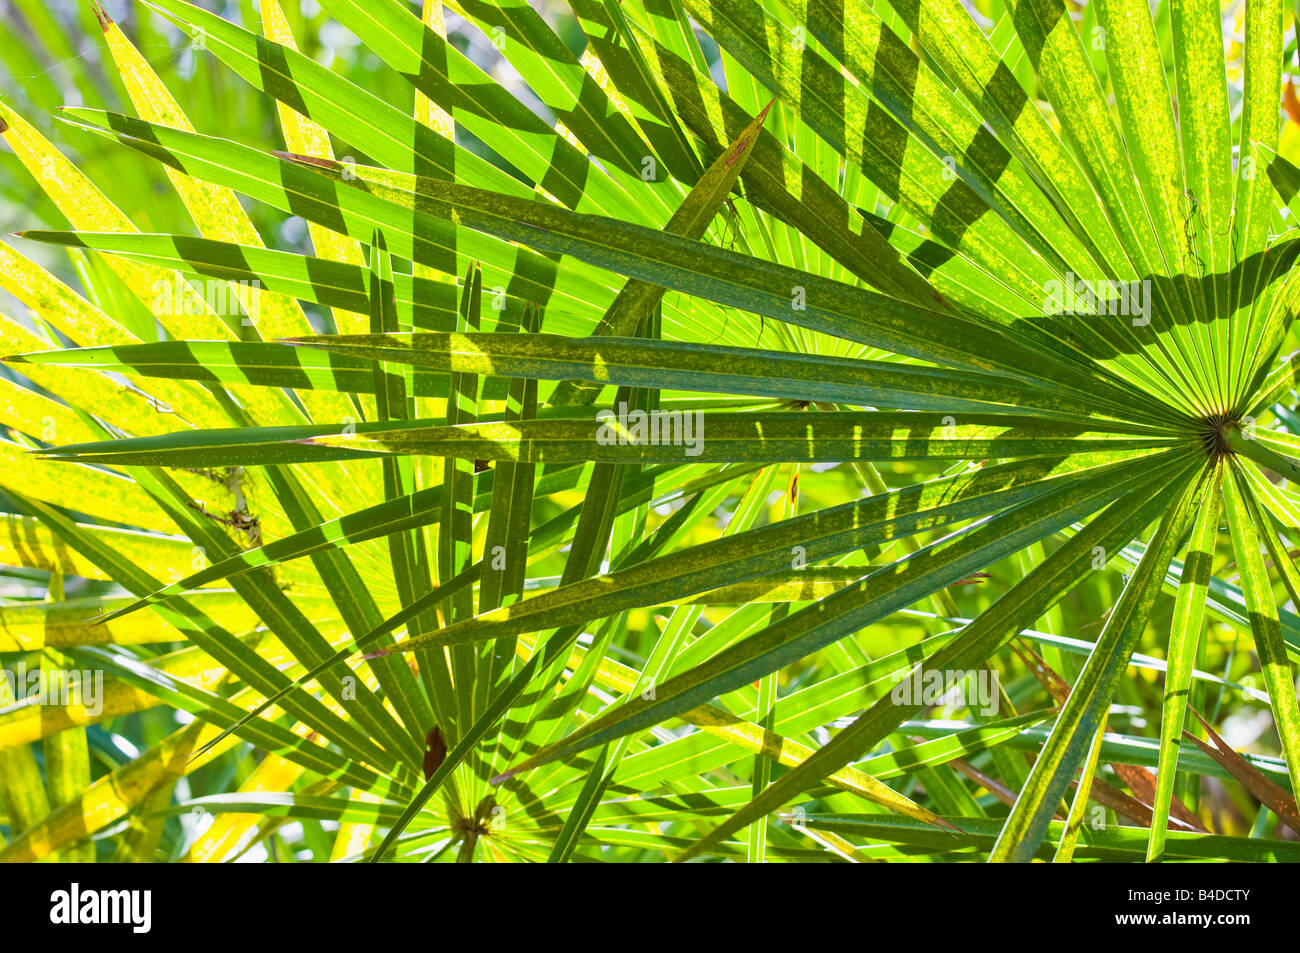 Foglie di Serenoa repens Saw palmetto un palm come pianta che cresce in grumi o densi canneti in sabbia terre costiere Foto Stock